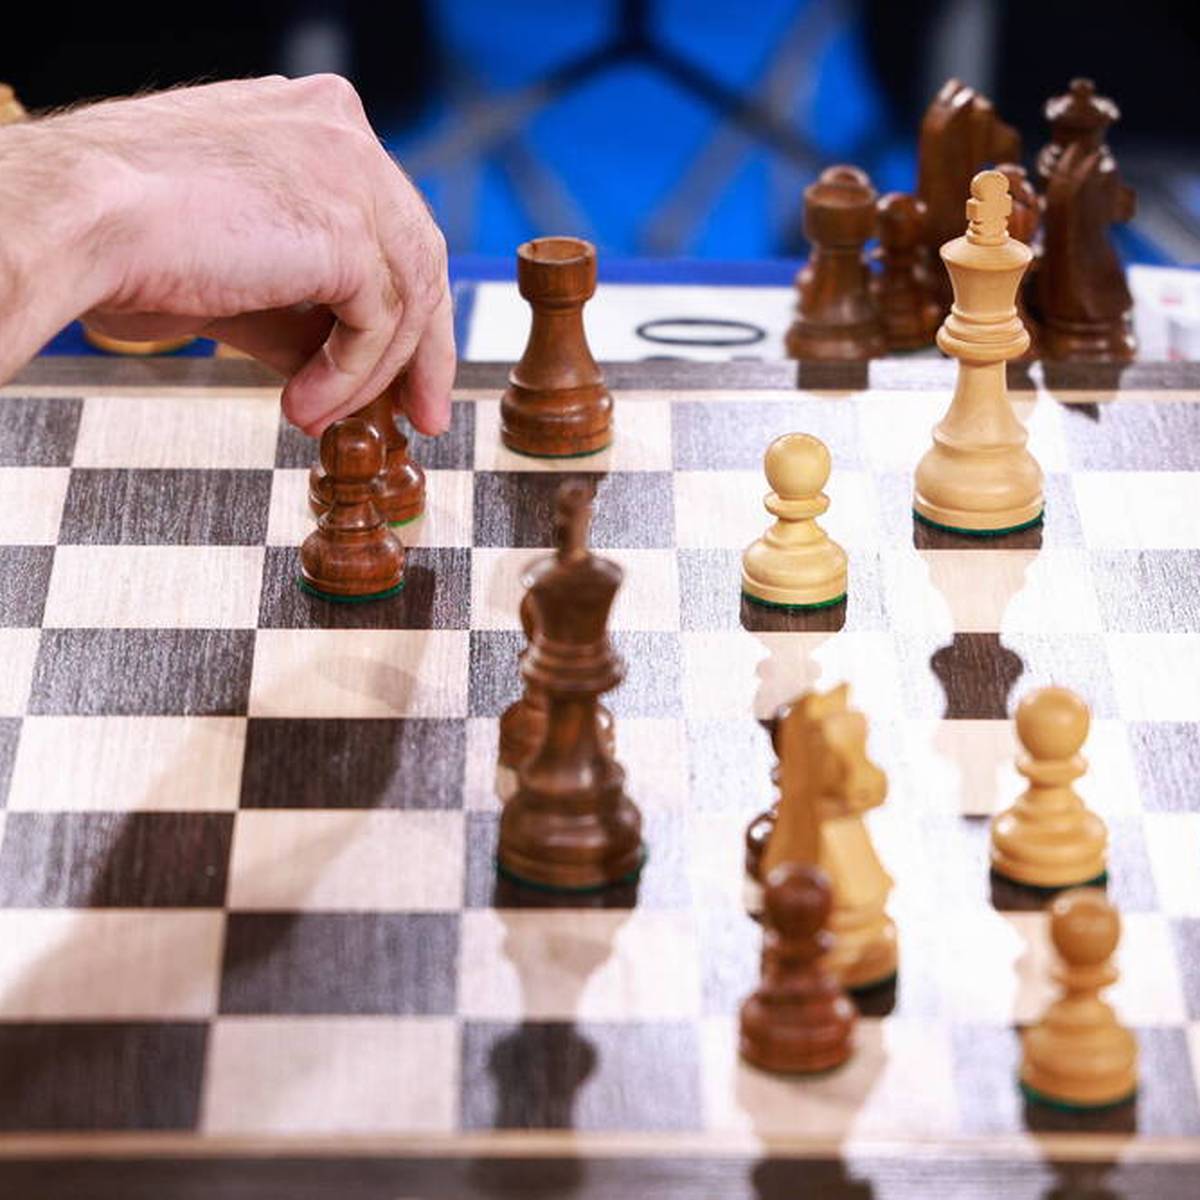 Nach den Betrugsvorwürfen von Magnus Carlsen gegen Hans Niemann hat der Schach-Sport seinen nächsten Eklat. Im Fokus stehen diesmal die Aussagen eines Kommentators.